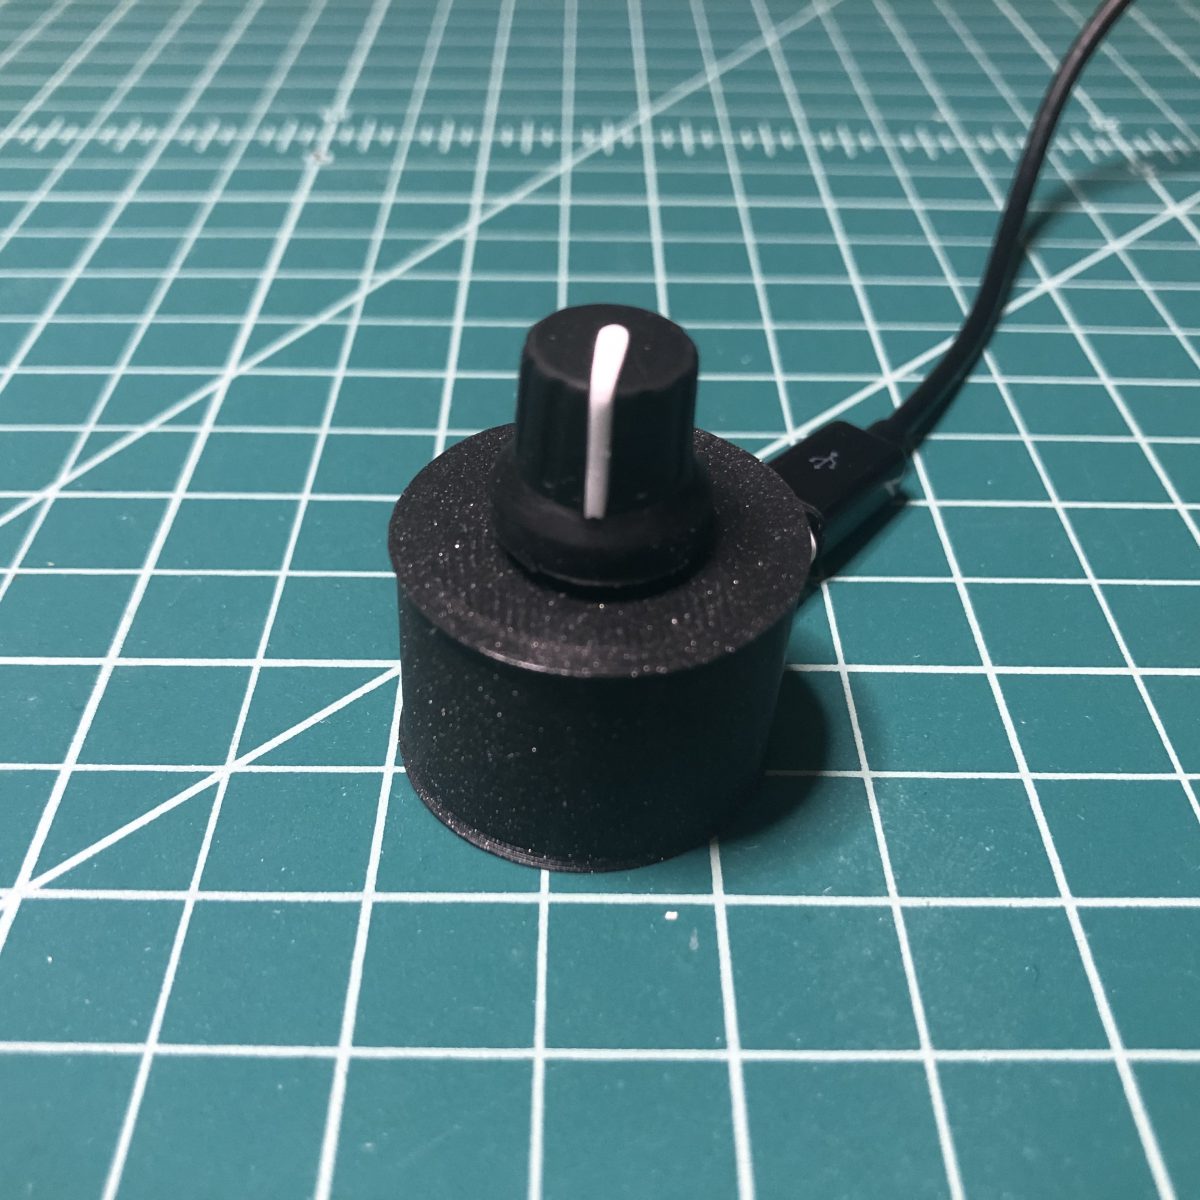 Simple USB Audio Controller in CircuitPython